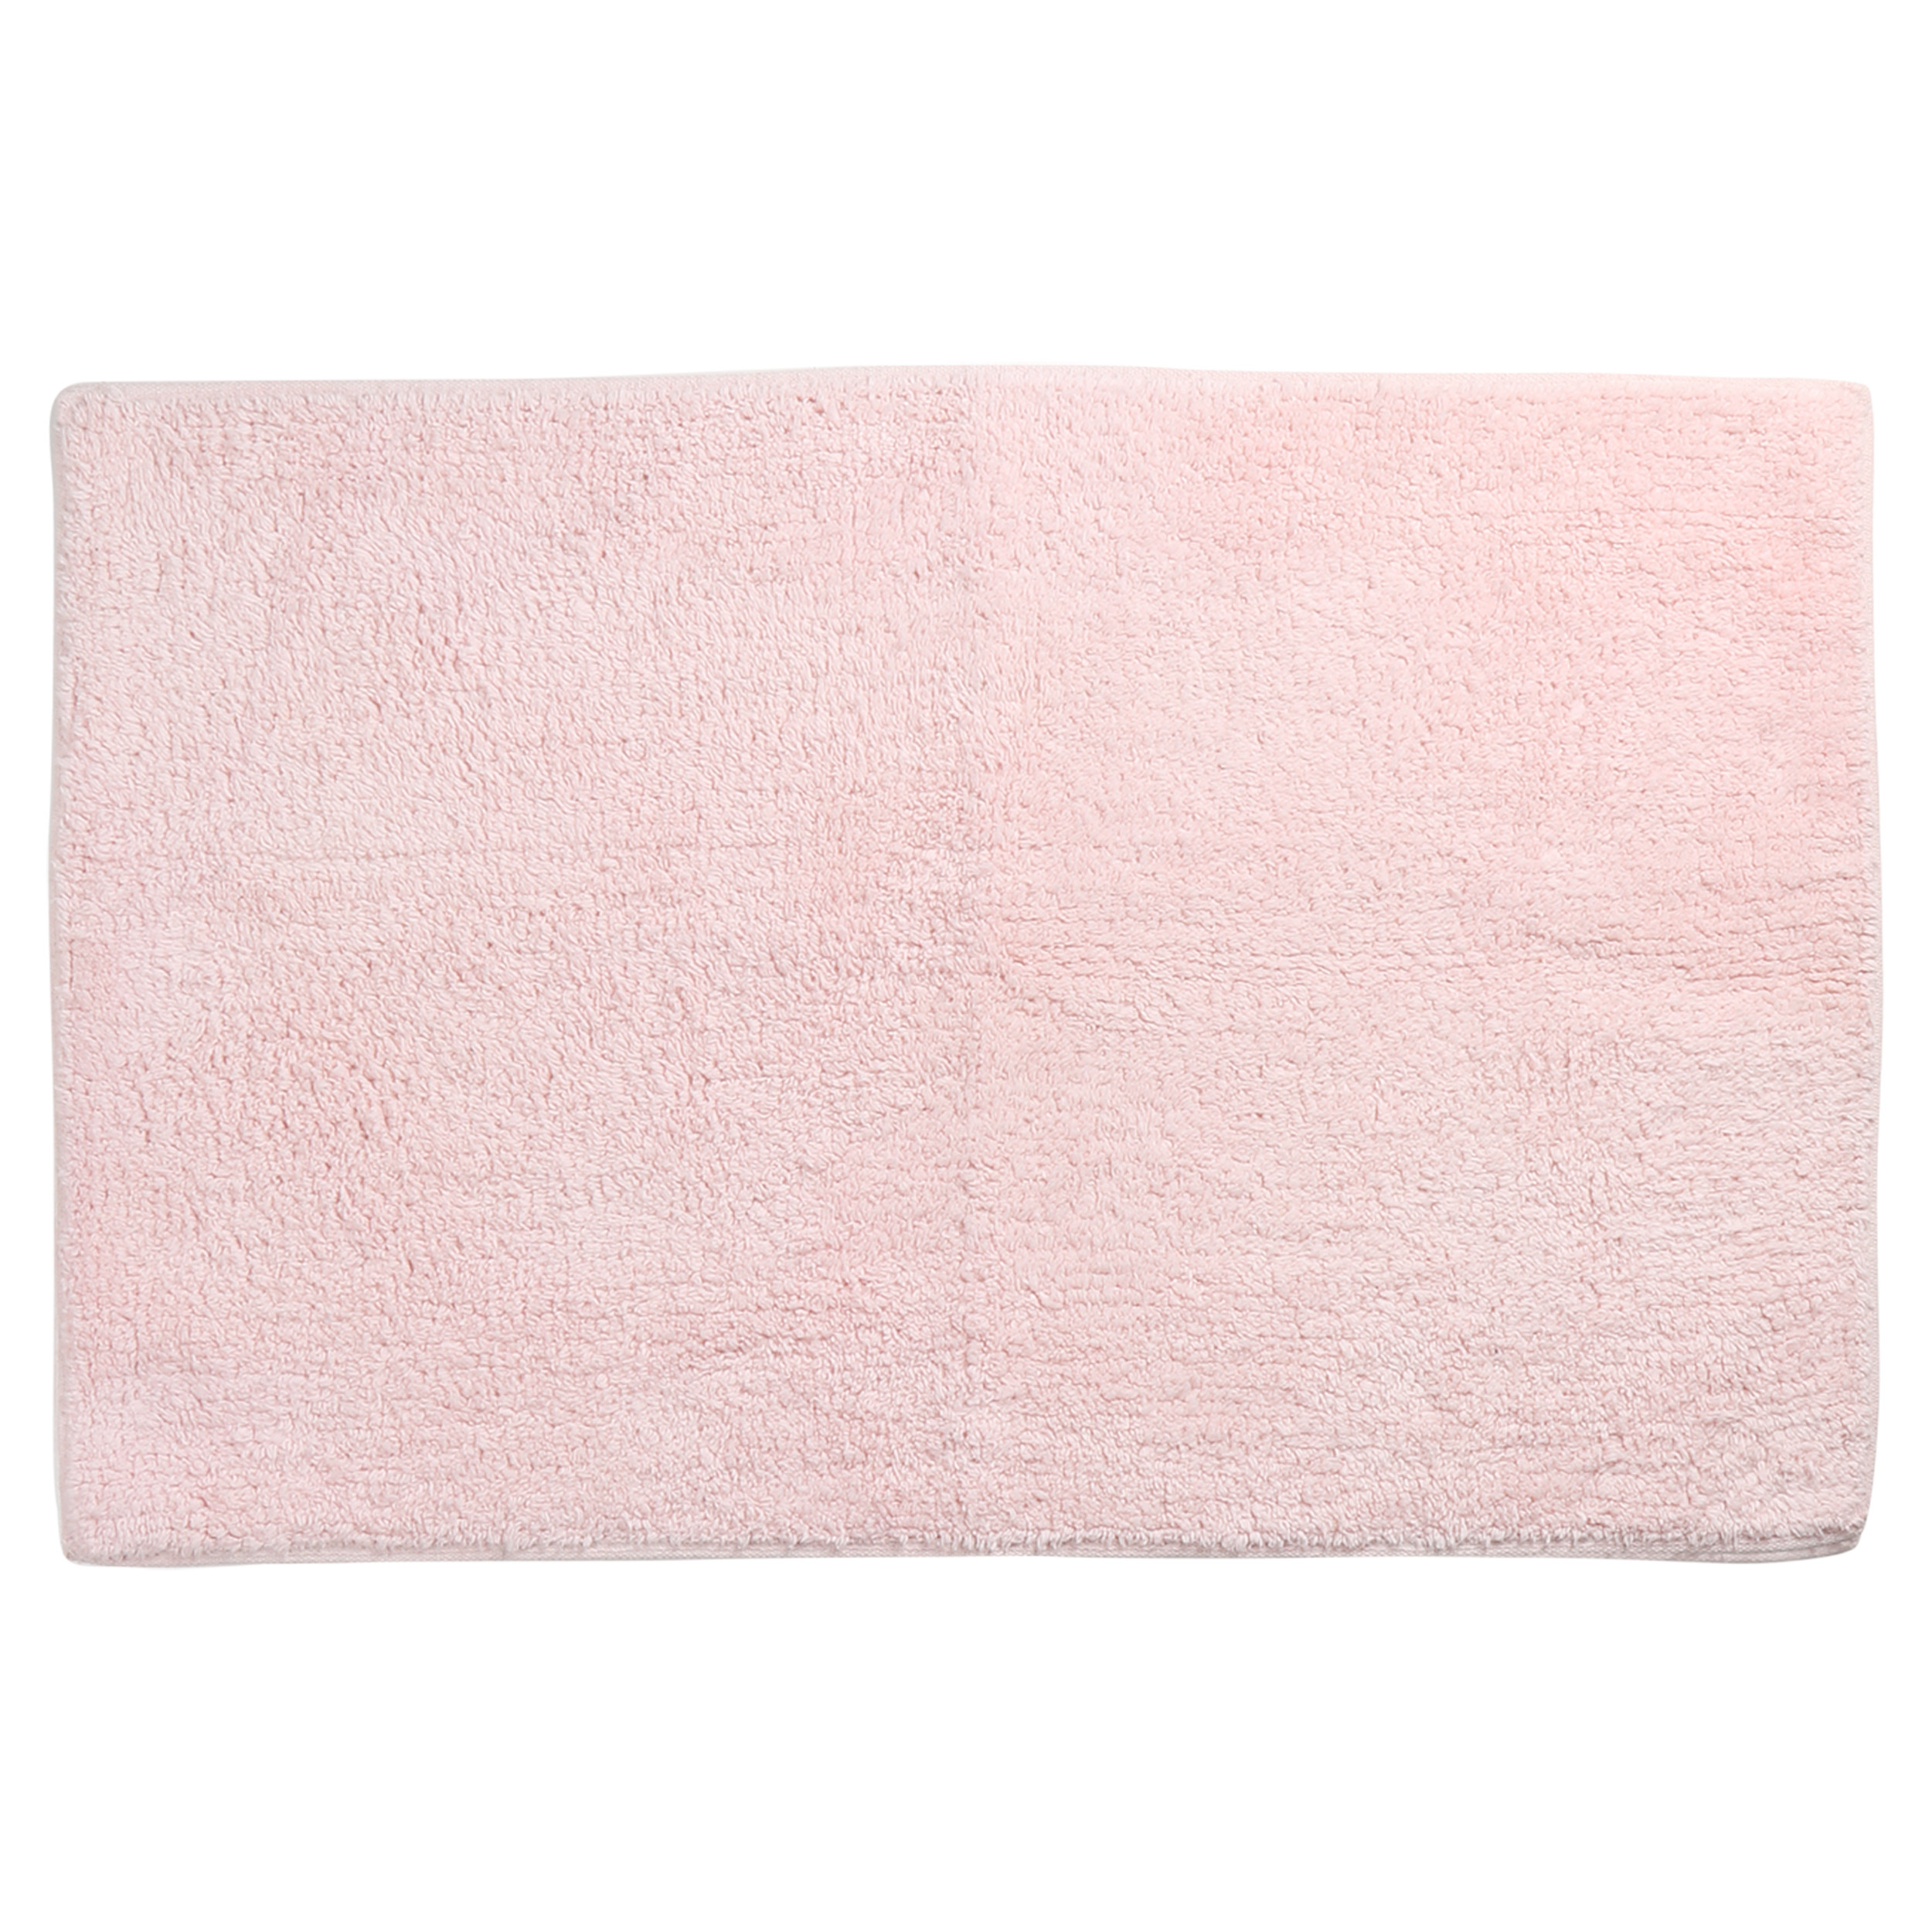 Differnz Initio badmat geschikt voor vloerverwarming 100% katoen 50 x 80 cm roze